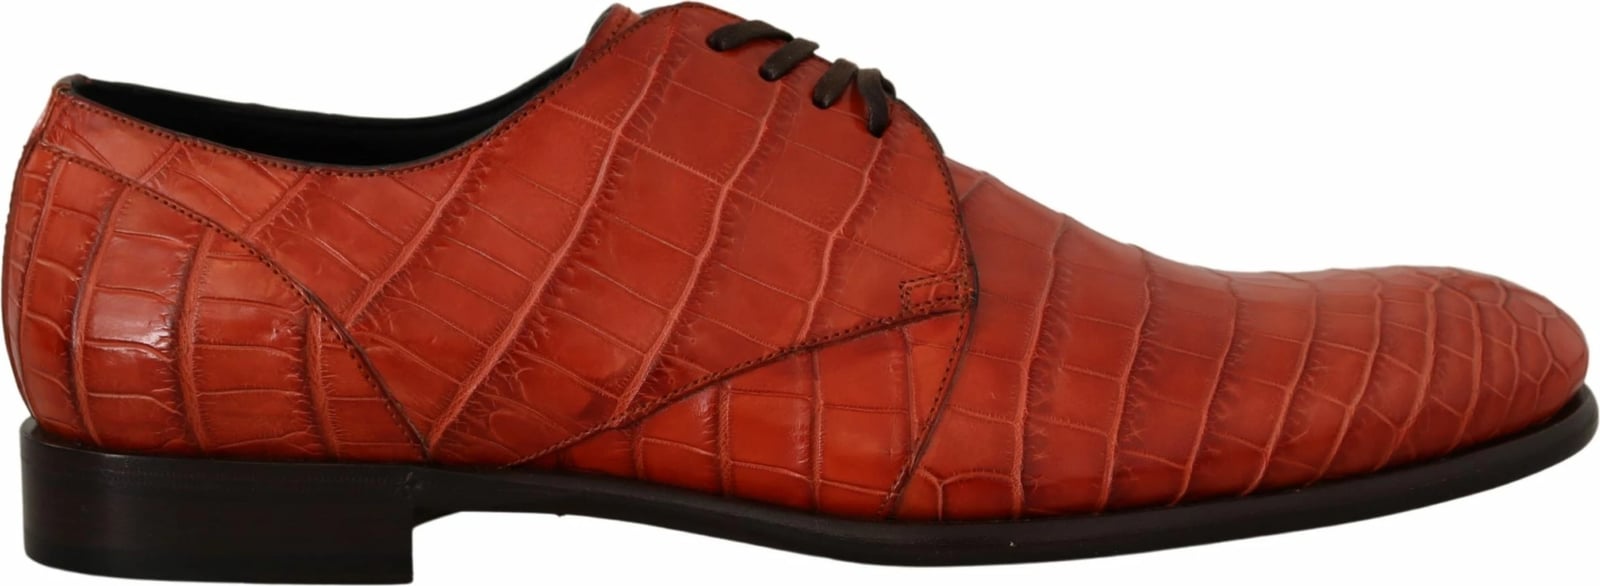 Këpucë për meshkuj Dolce & Gabbana, të portokallta 